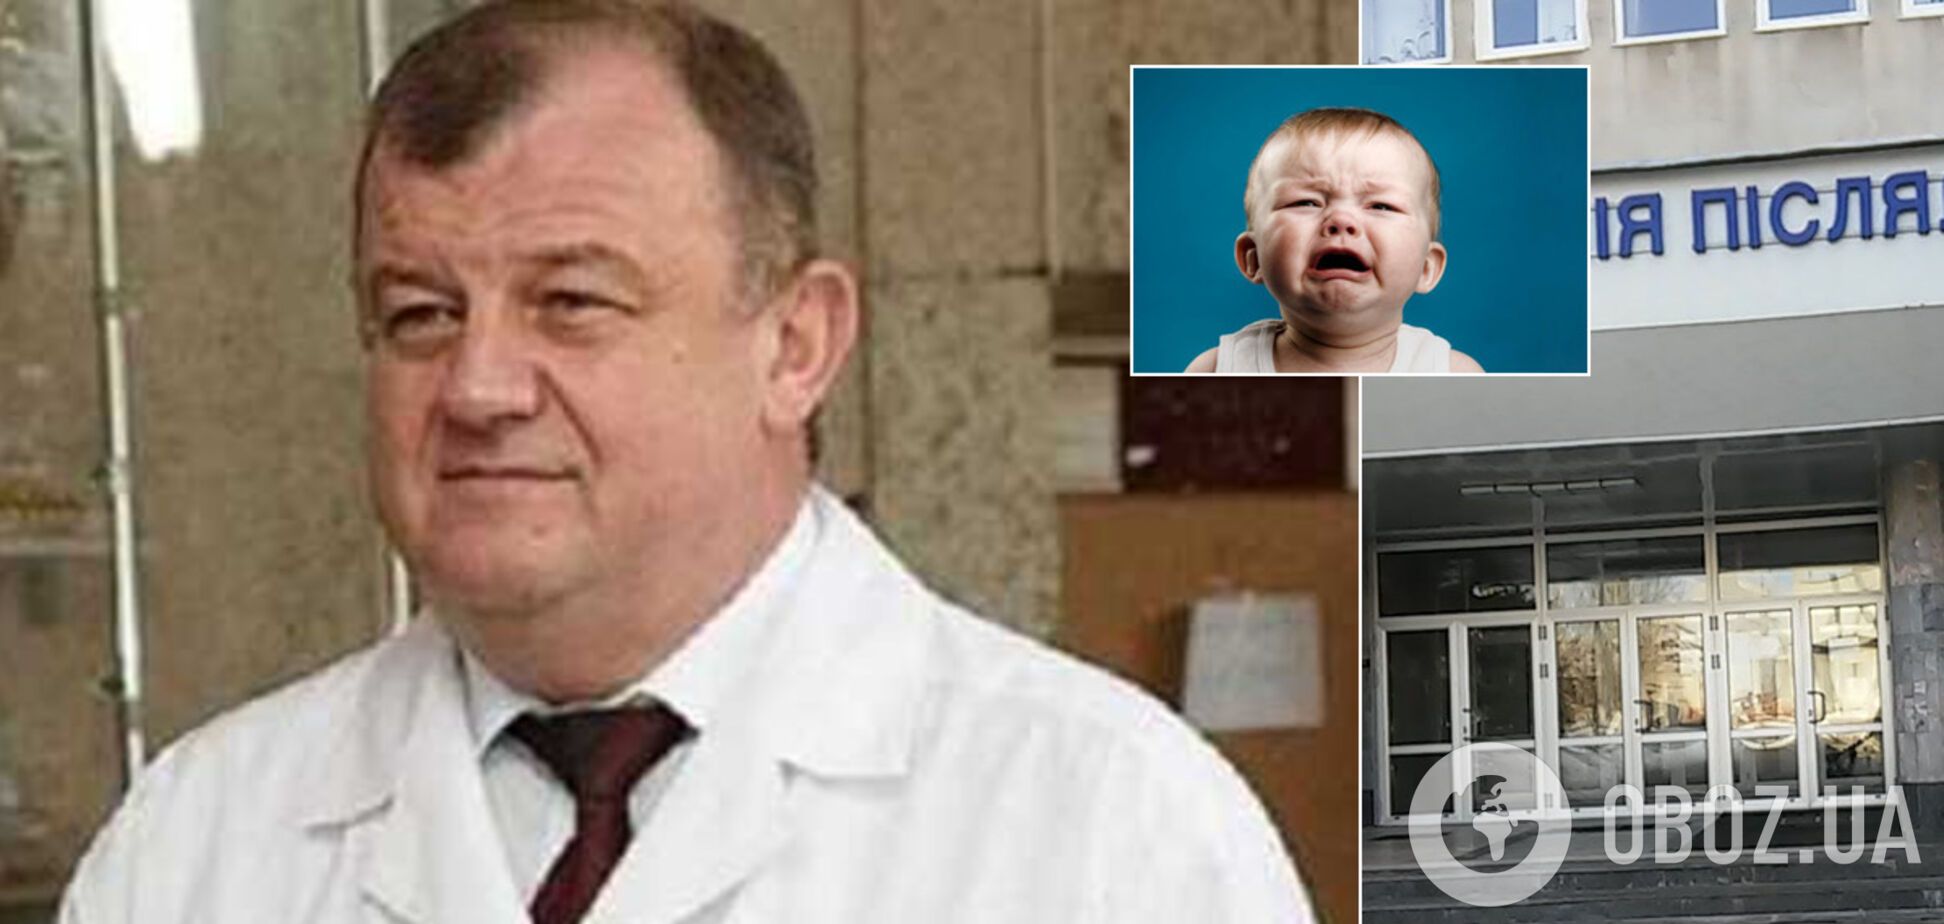 Продавал младенцев: главой харьковского вуза может стать известный врач-преступник